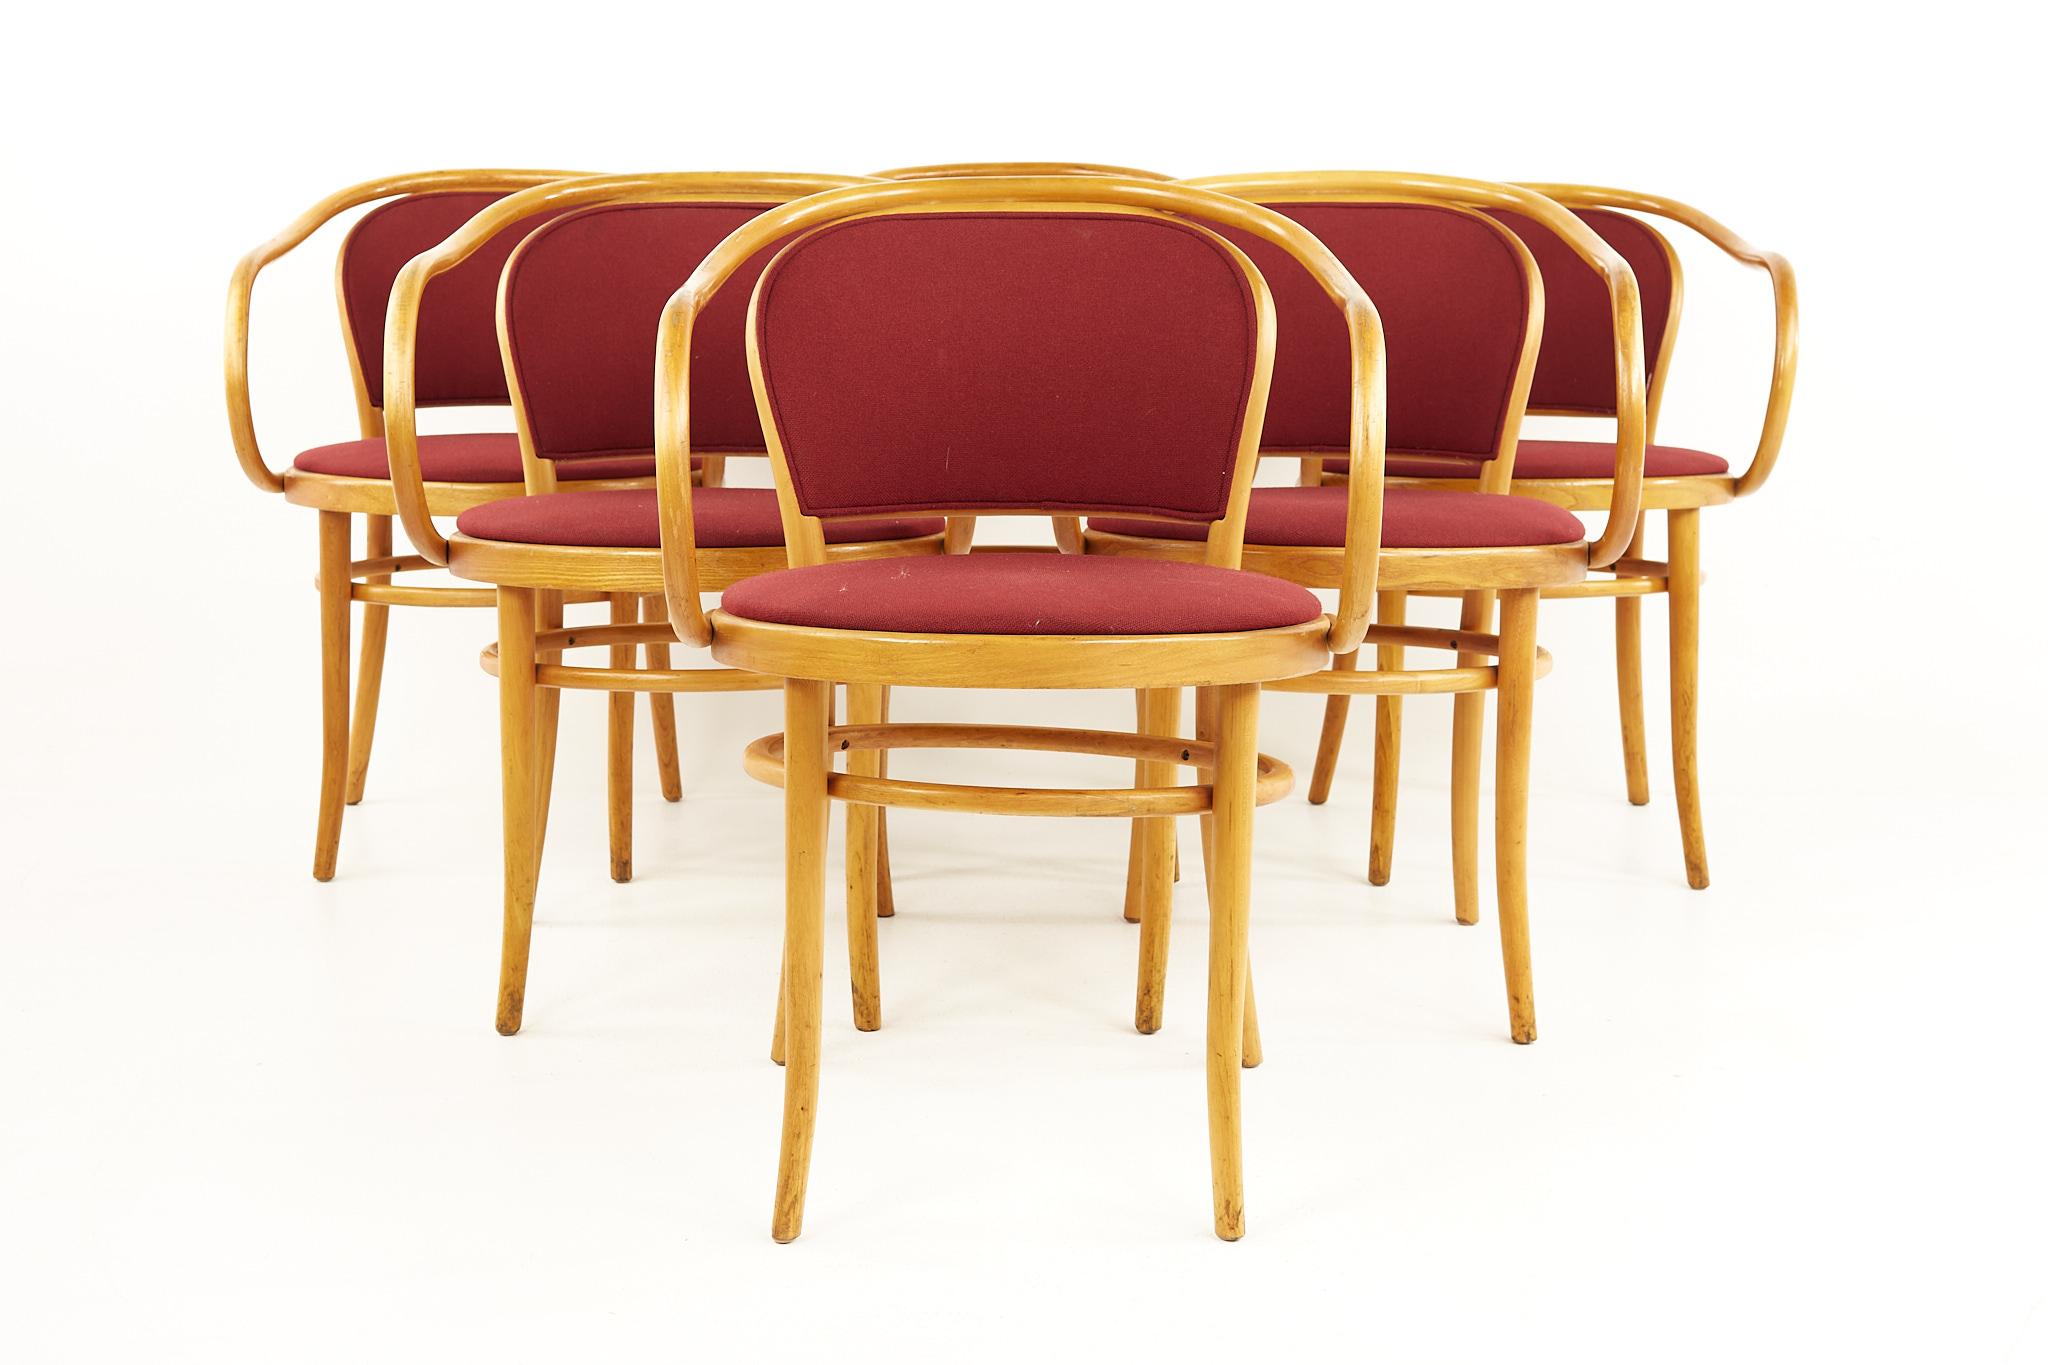 Le Corbusier for Thonet chaises de salle à manger en bois courbé du milieu du siècle - Set of 6

Chaque chaise mesure : 21 large x 22 profond x 31 haut, avec une hauteur de siège de 19 pouces et une hauteur d'accoudoir de 27.5 pouces 

Tous les